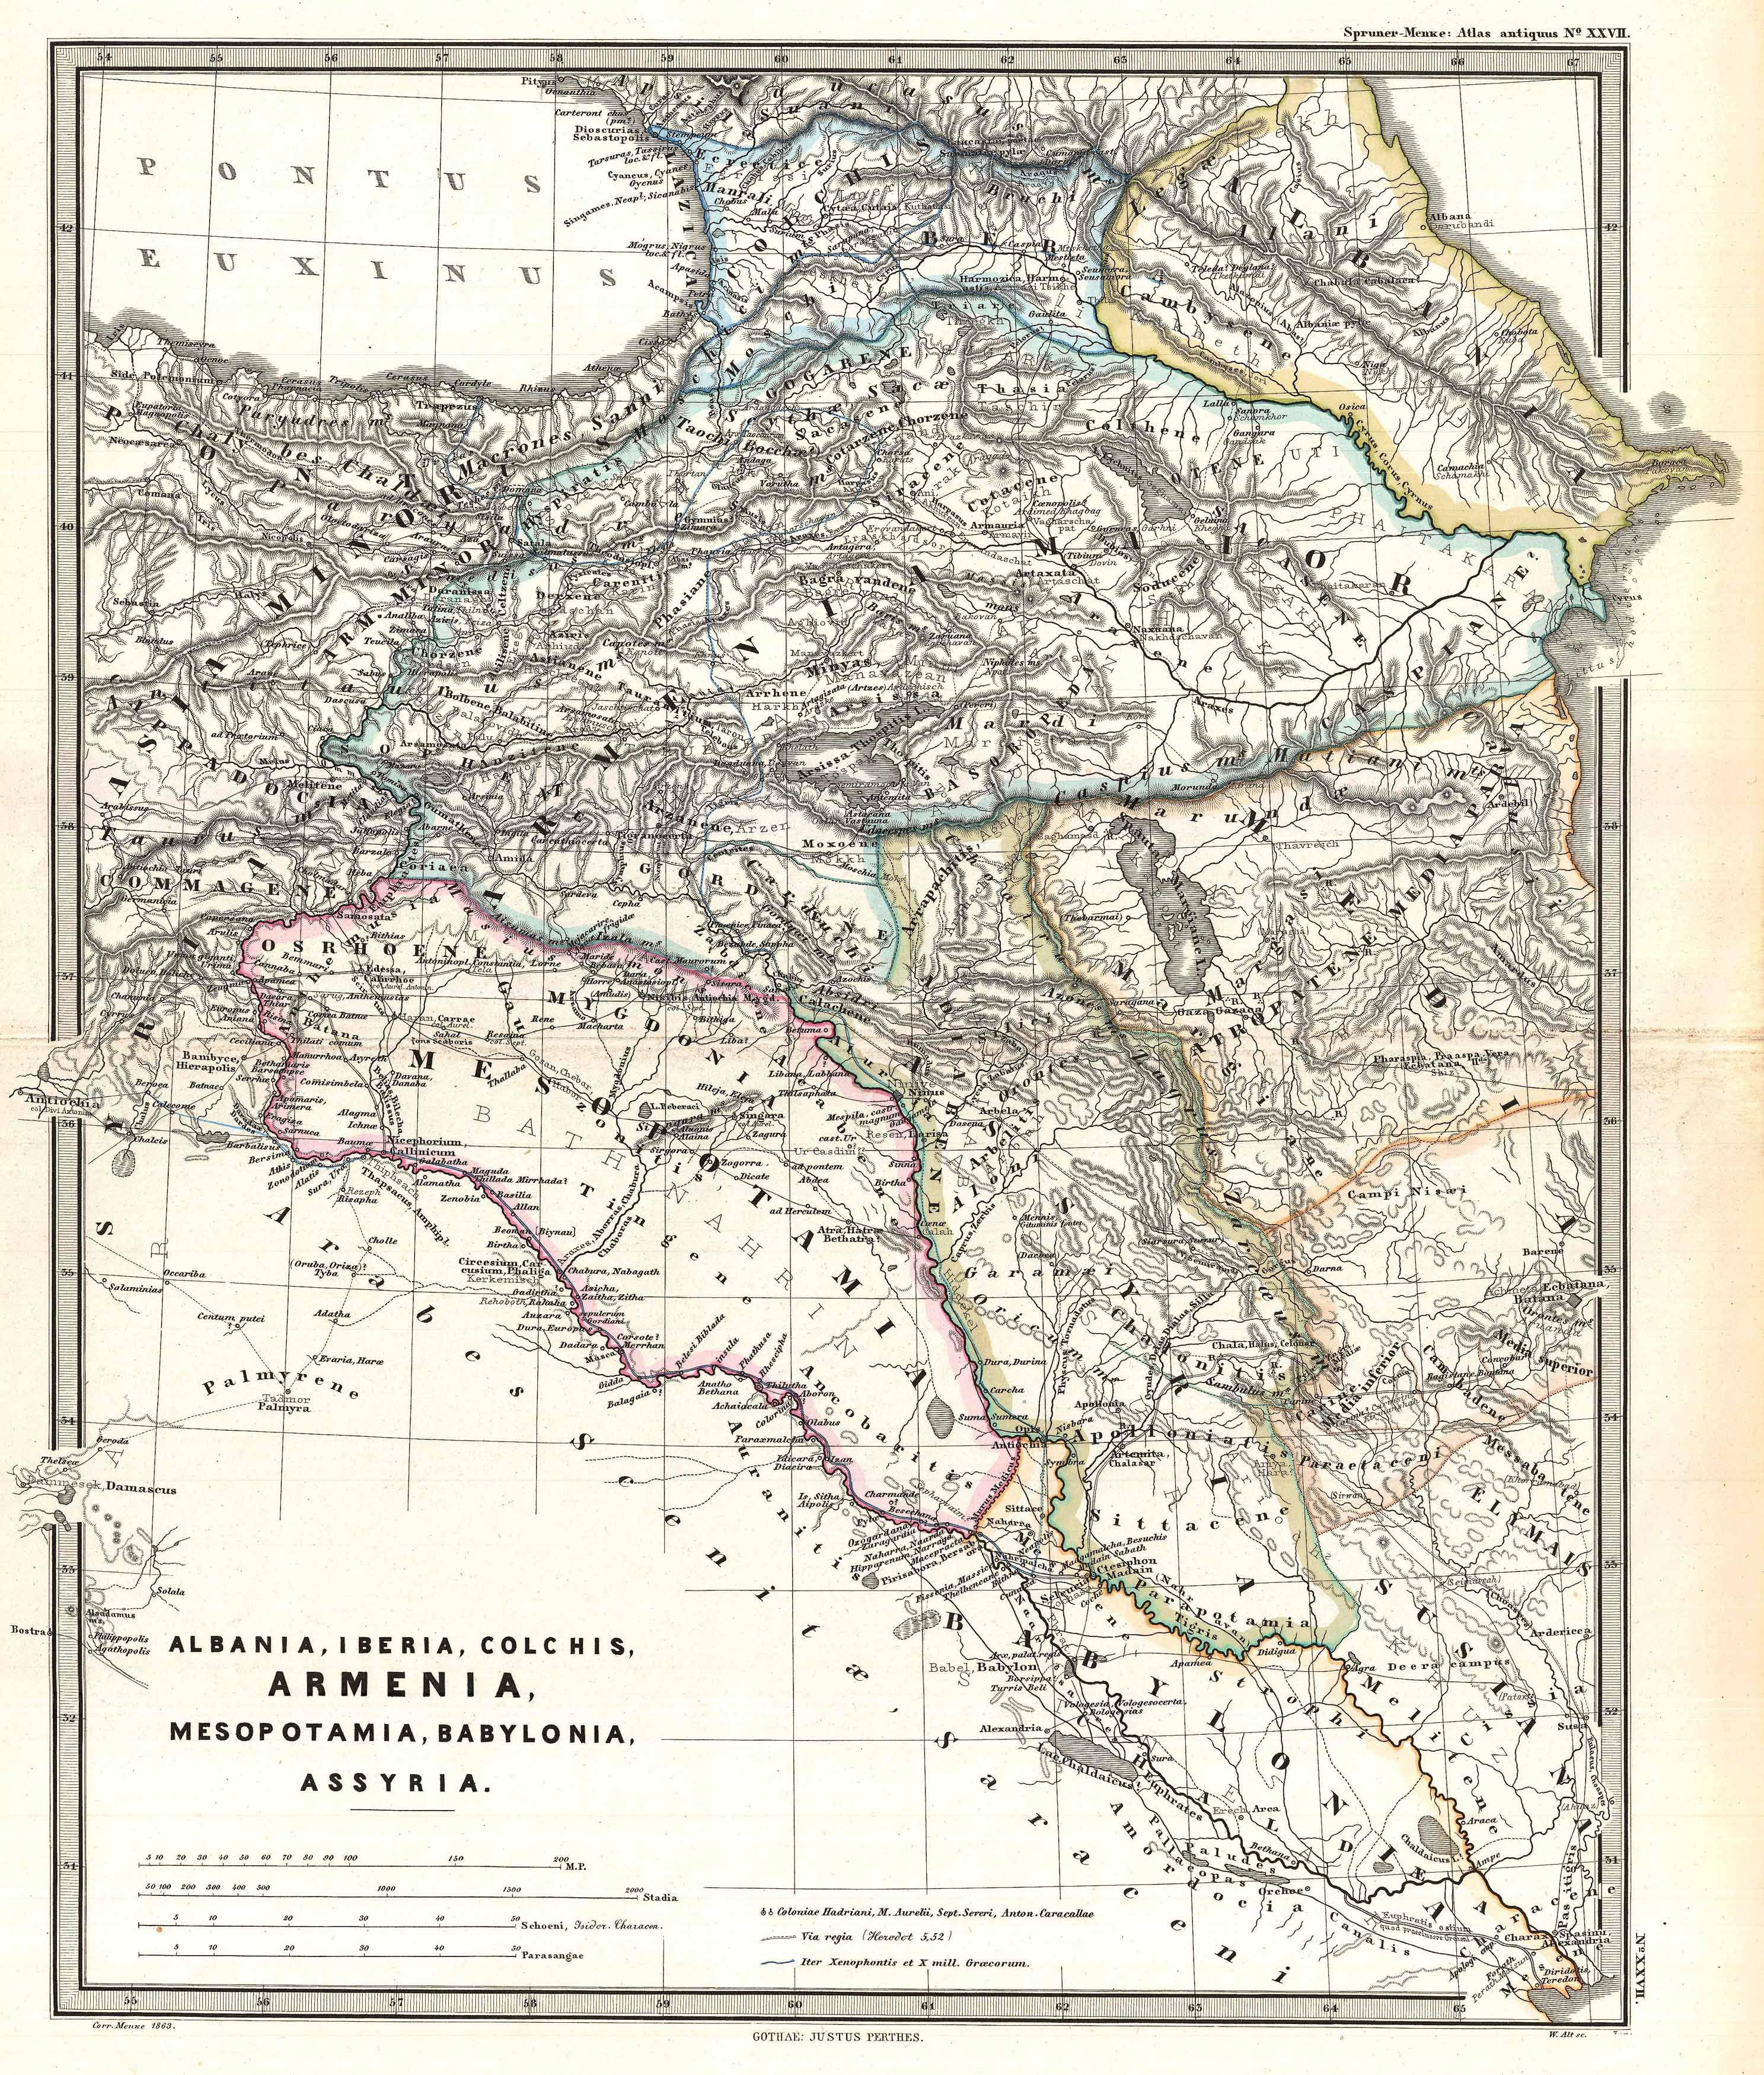 1965 Spruner Map of the Caucasus and Iraq in Antiquity - Geographicus - CaucusesIraq-spruner-1865